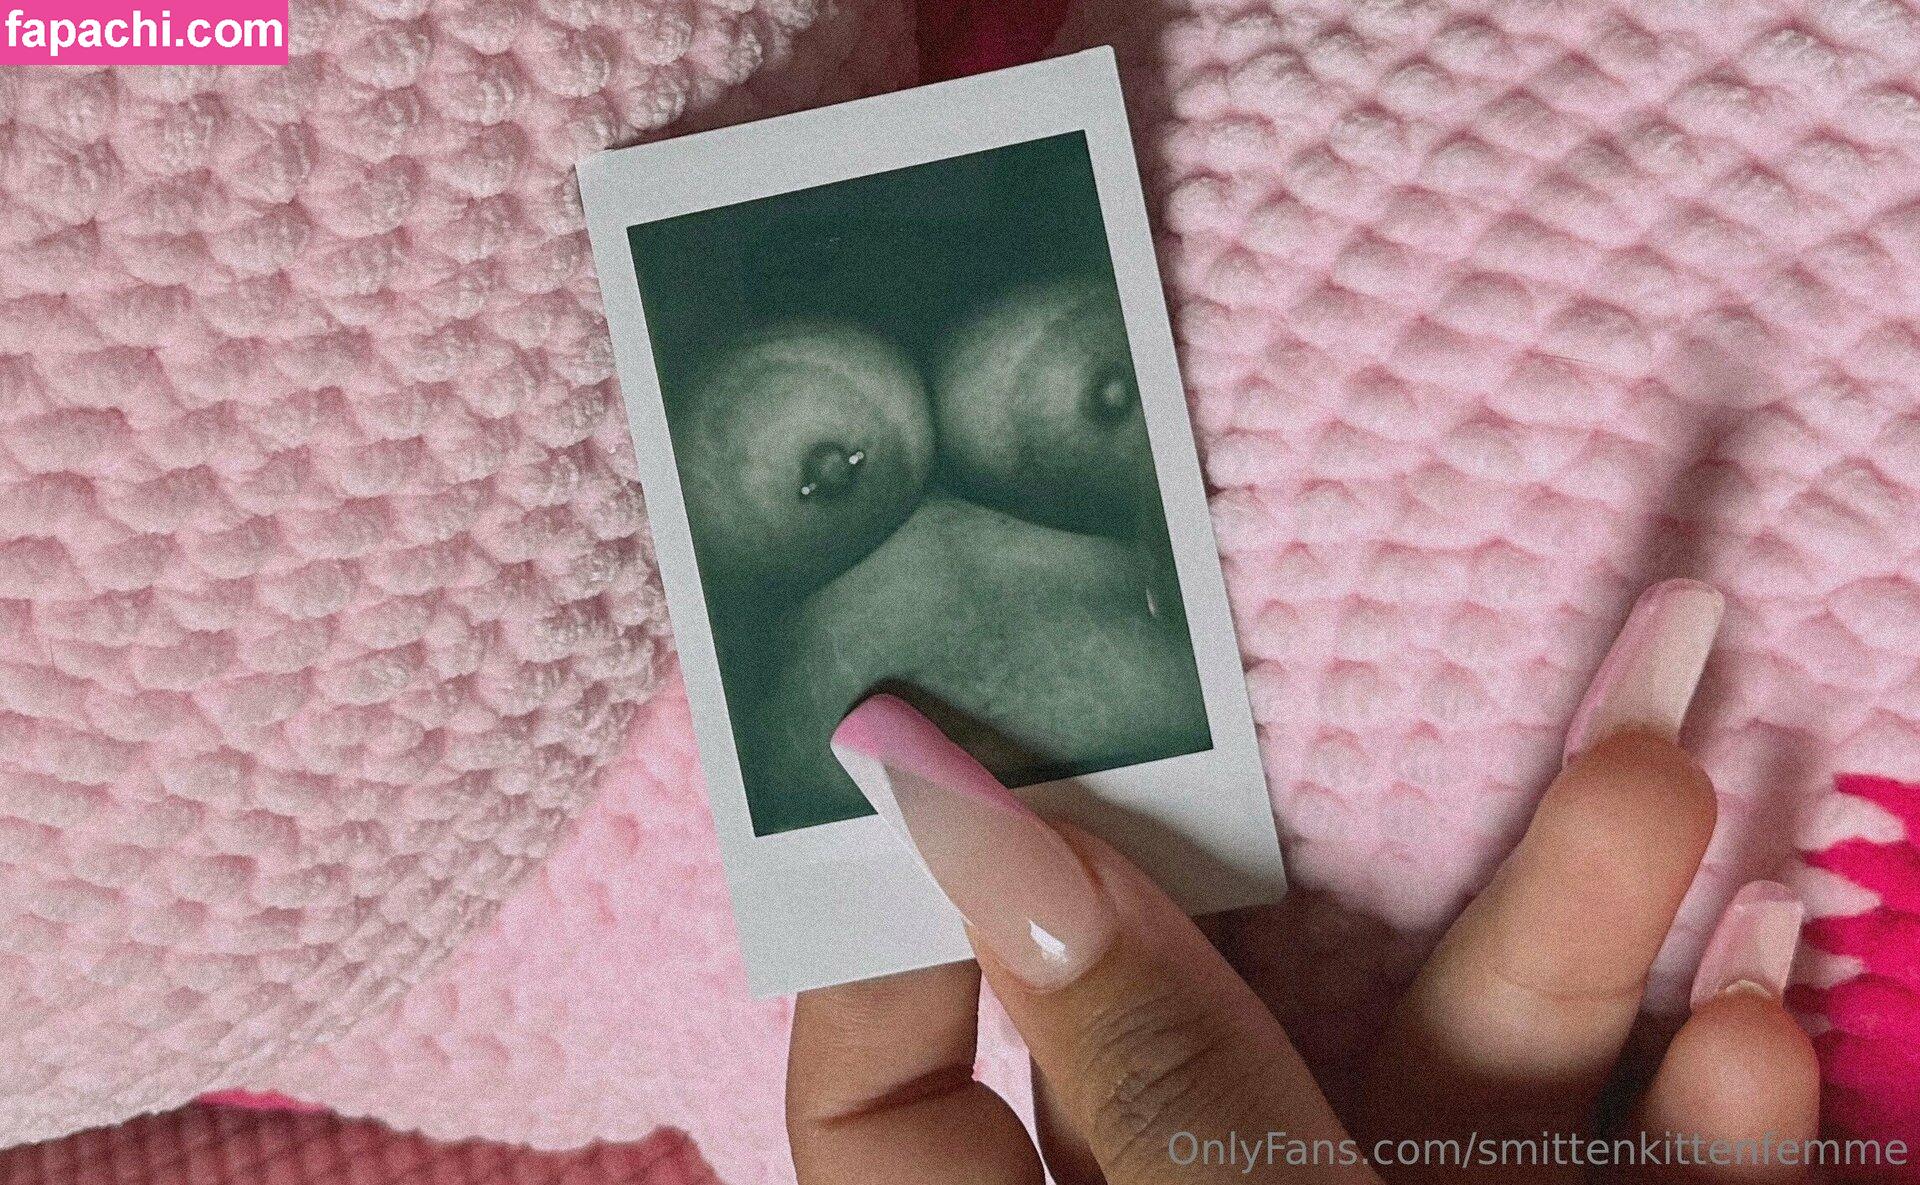 smittenkittenfemme / smittenkitchen leaked nude photo #0092 from OnlyFans/Patreon